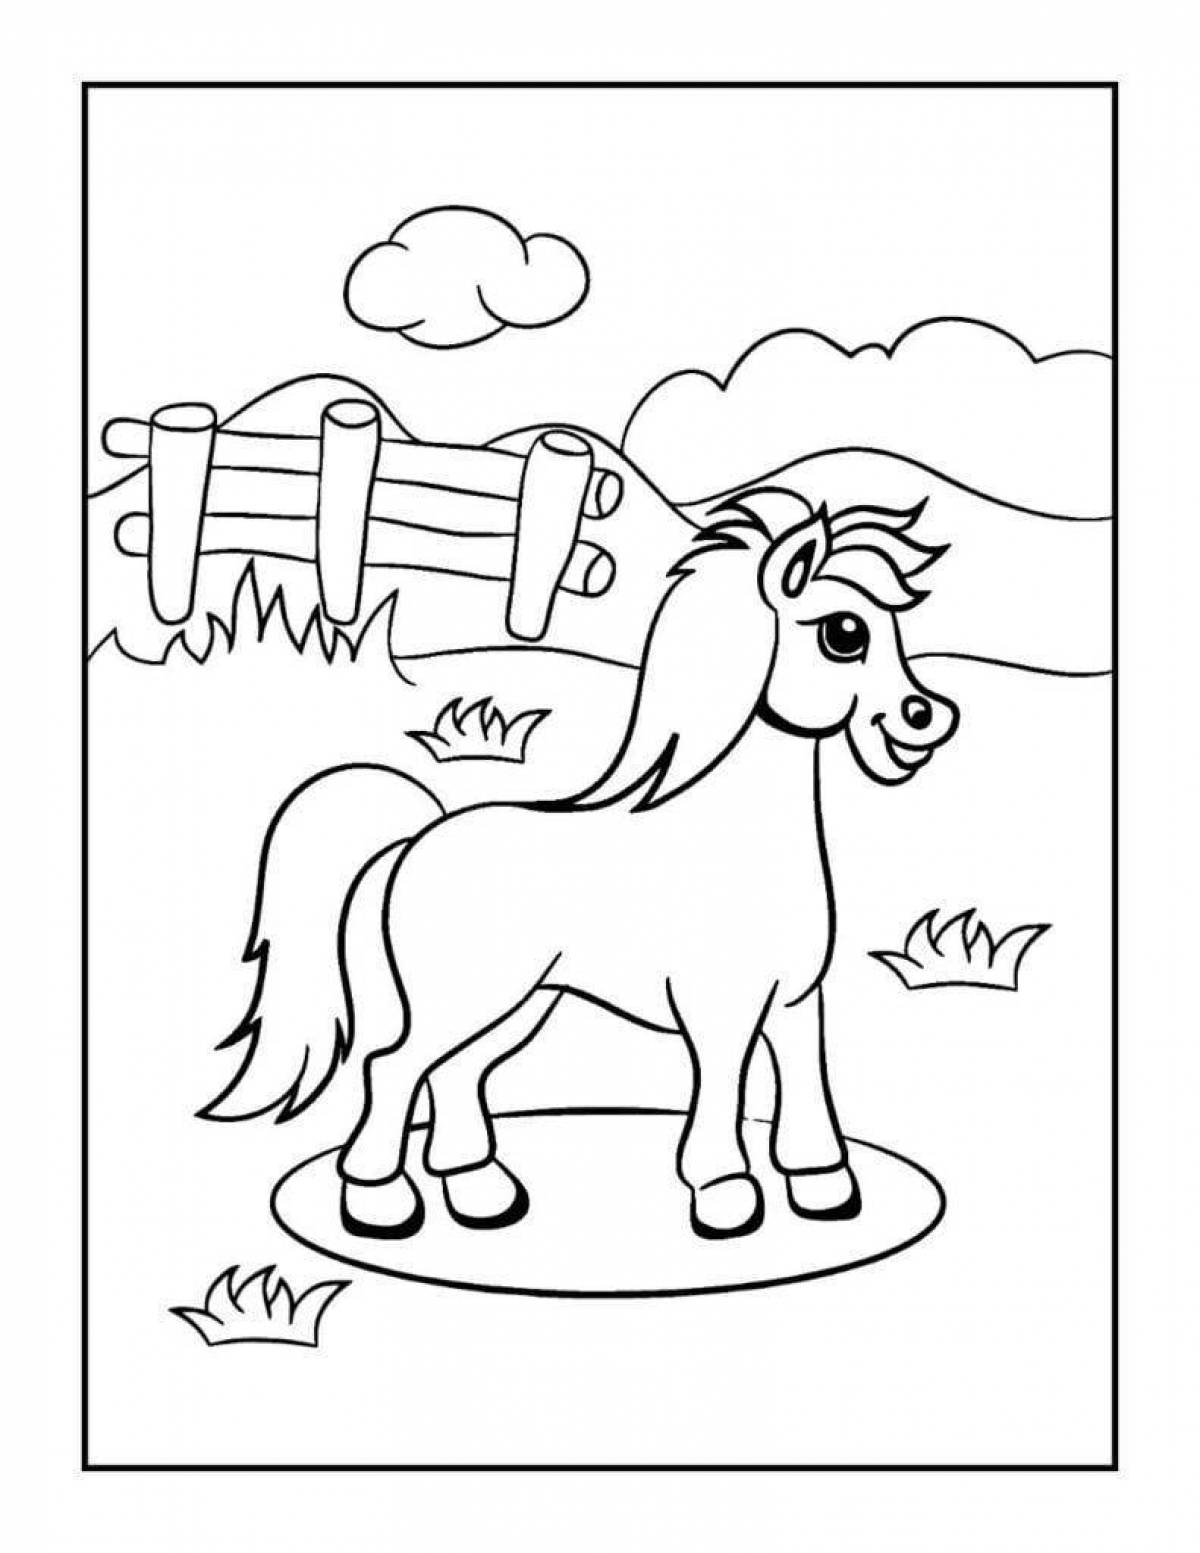 Лучистая раскраска лошадь для детей 5-6 лет